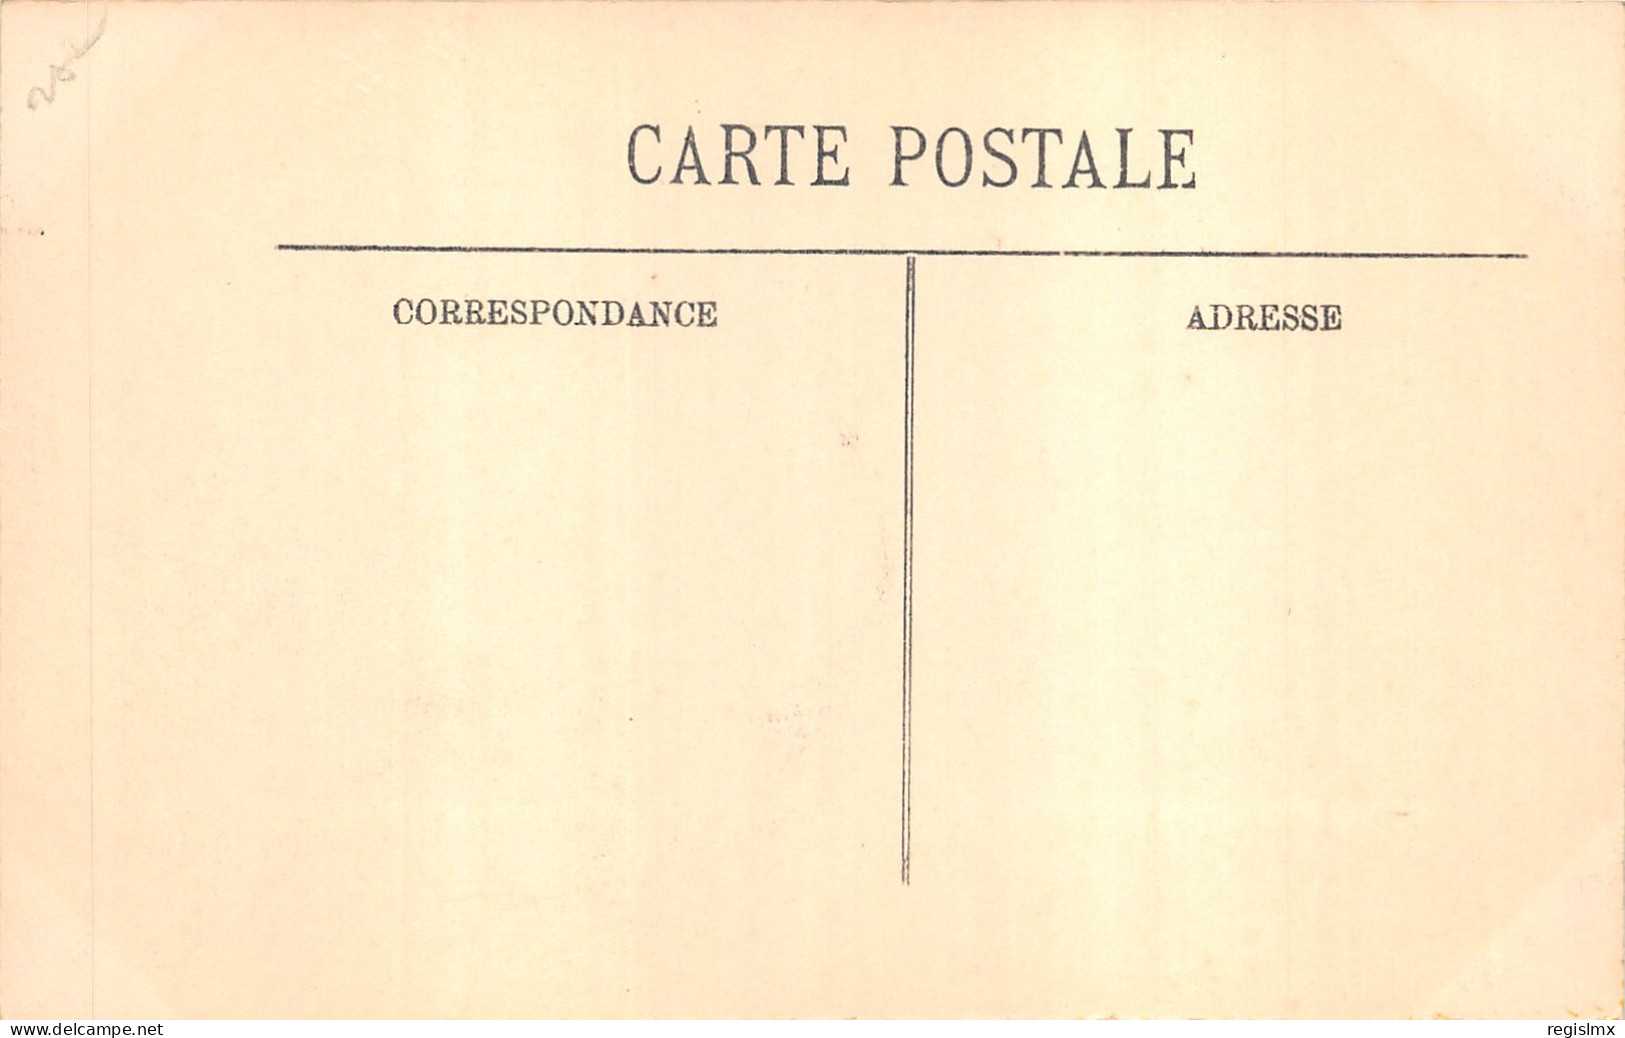 75-PARIS-CRUE DE LA SEINE-N°T2408-A/0243 - Überschwemmung 1910